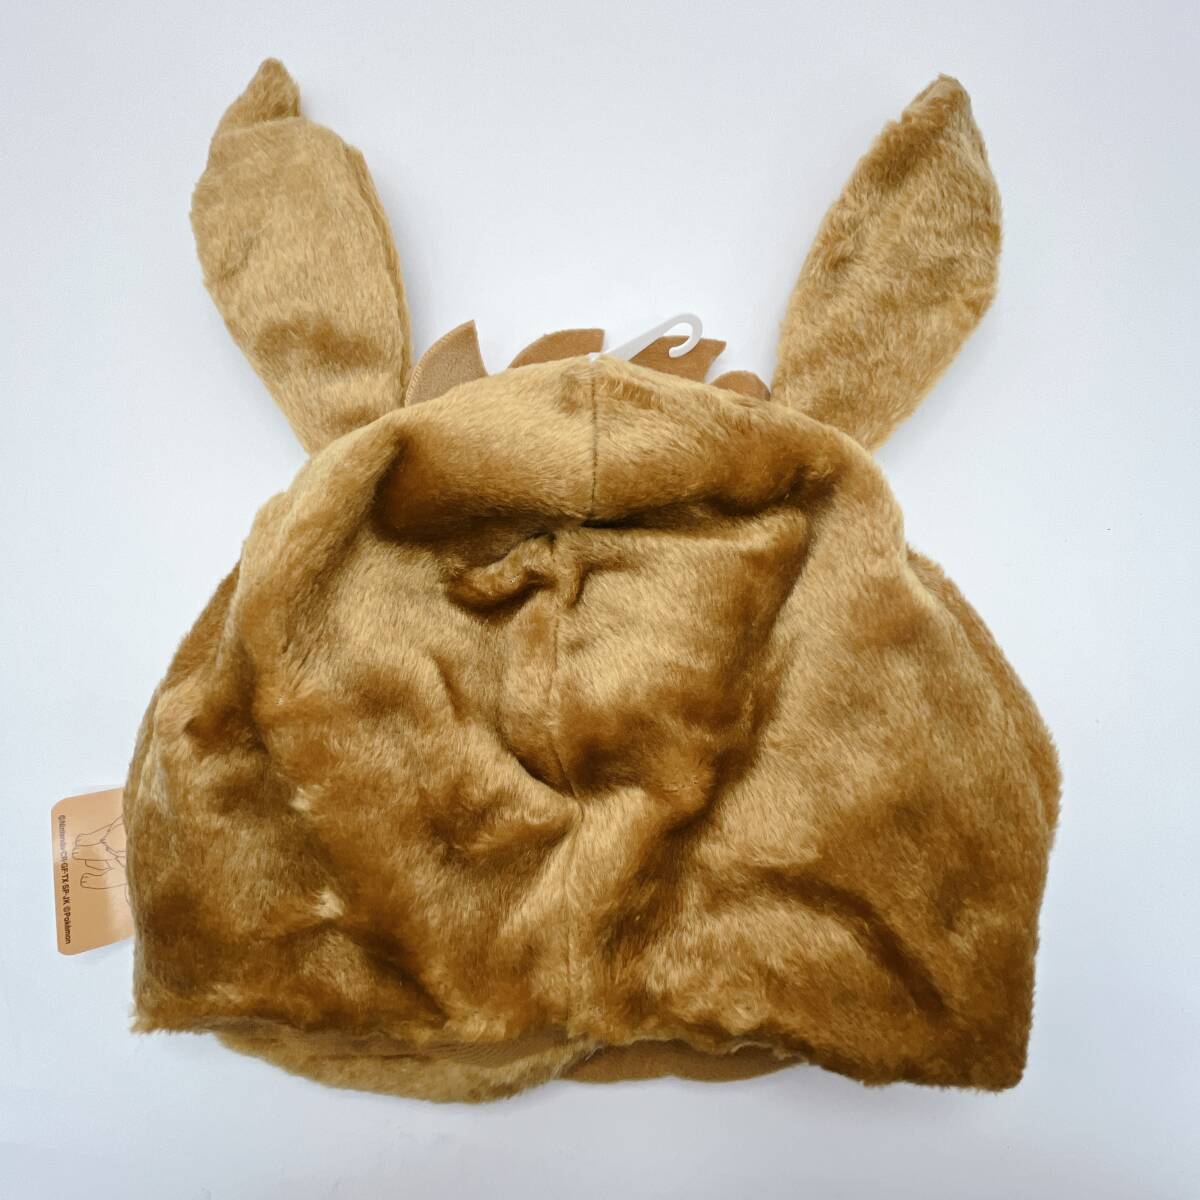 SAZACsa рюкзак костюм мульт-героя CAPi-bi свободный размер TMY-035 (OI0500)